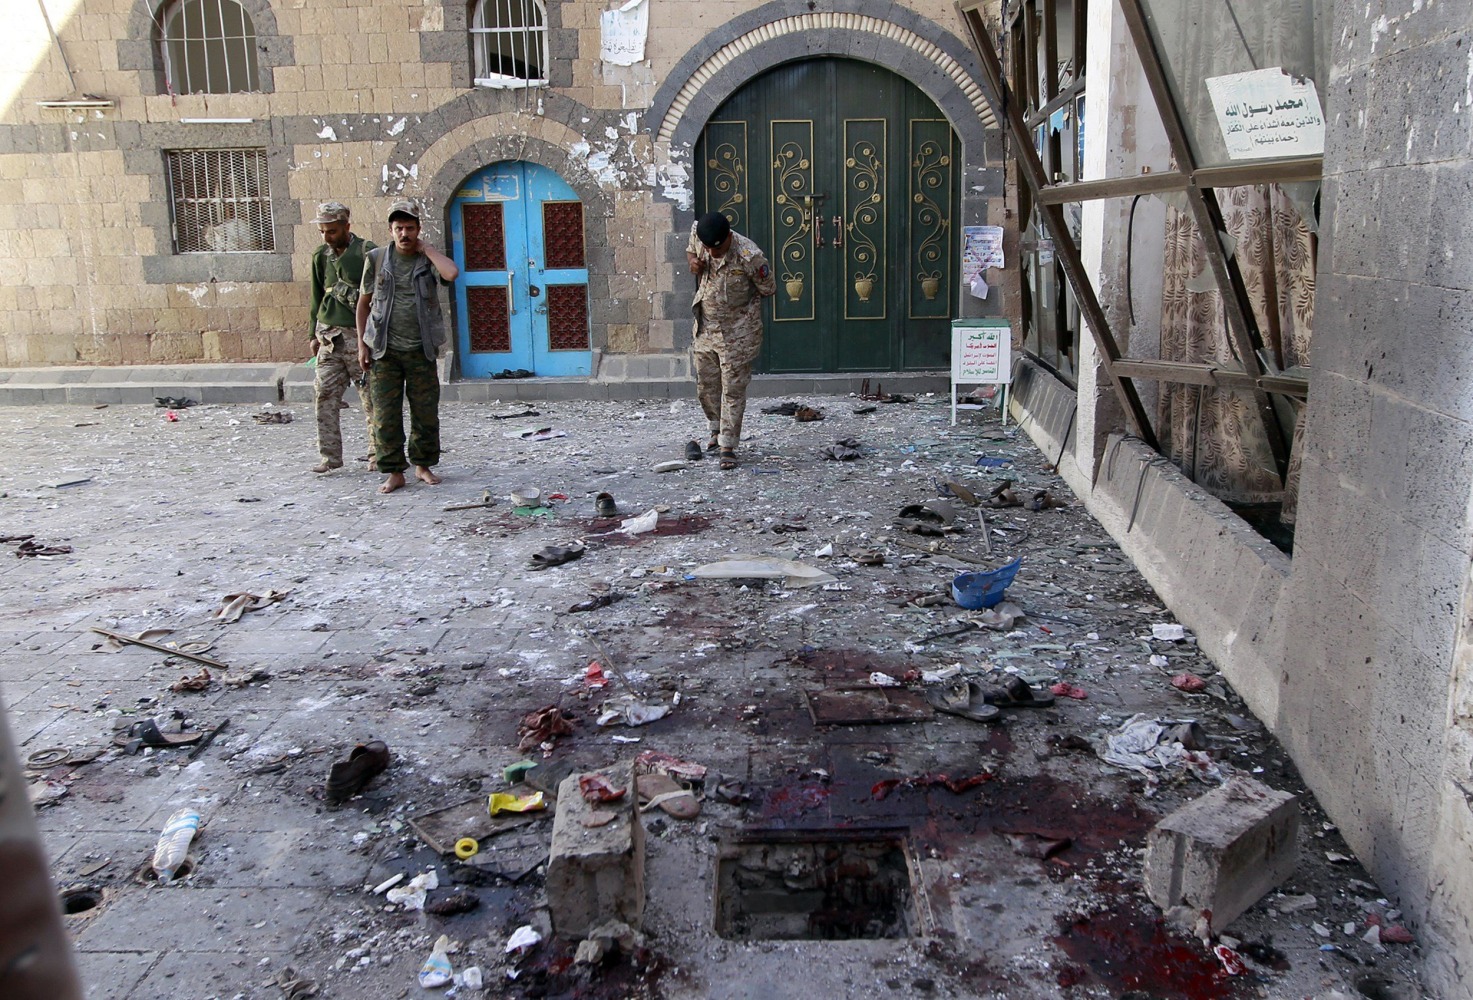 Sanaa Suicide Bomber Kills 25 During Eid al-Adha Prayers 